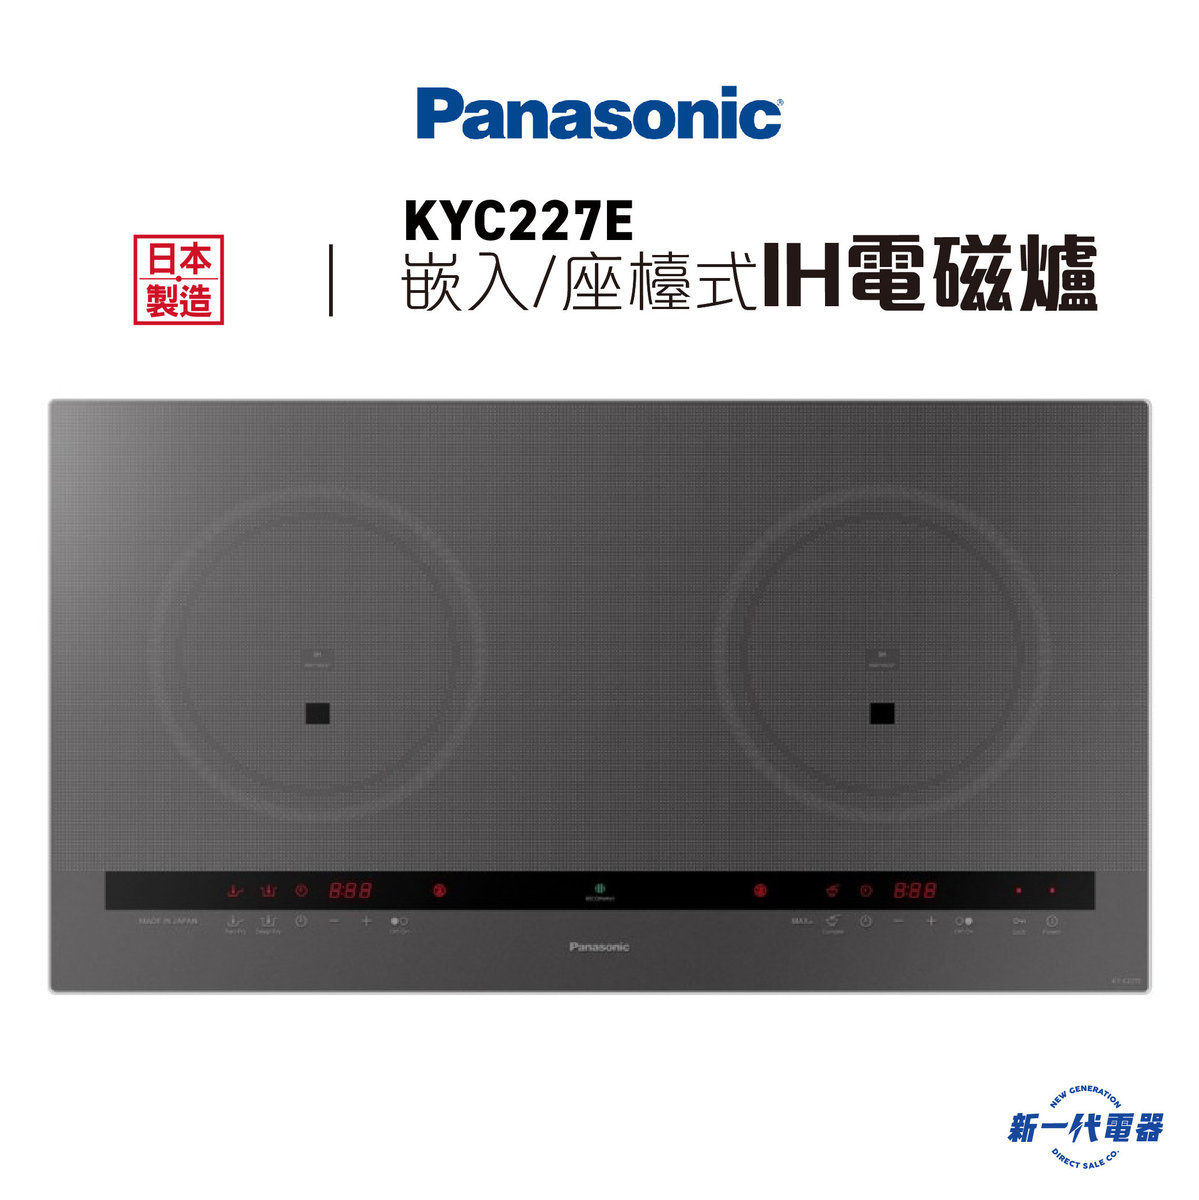 KYC227E   -嵌入/座檯式IH電磁爐 13A (KY-C227E)